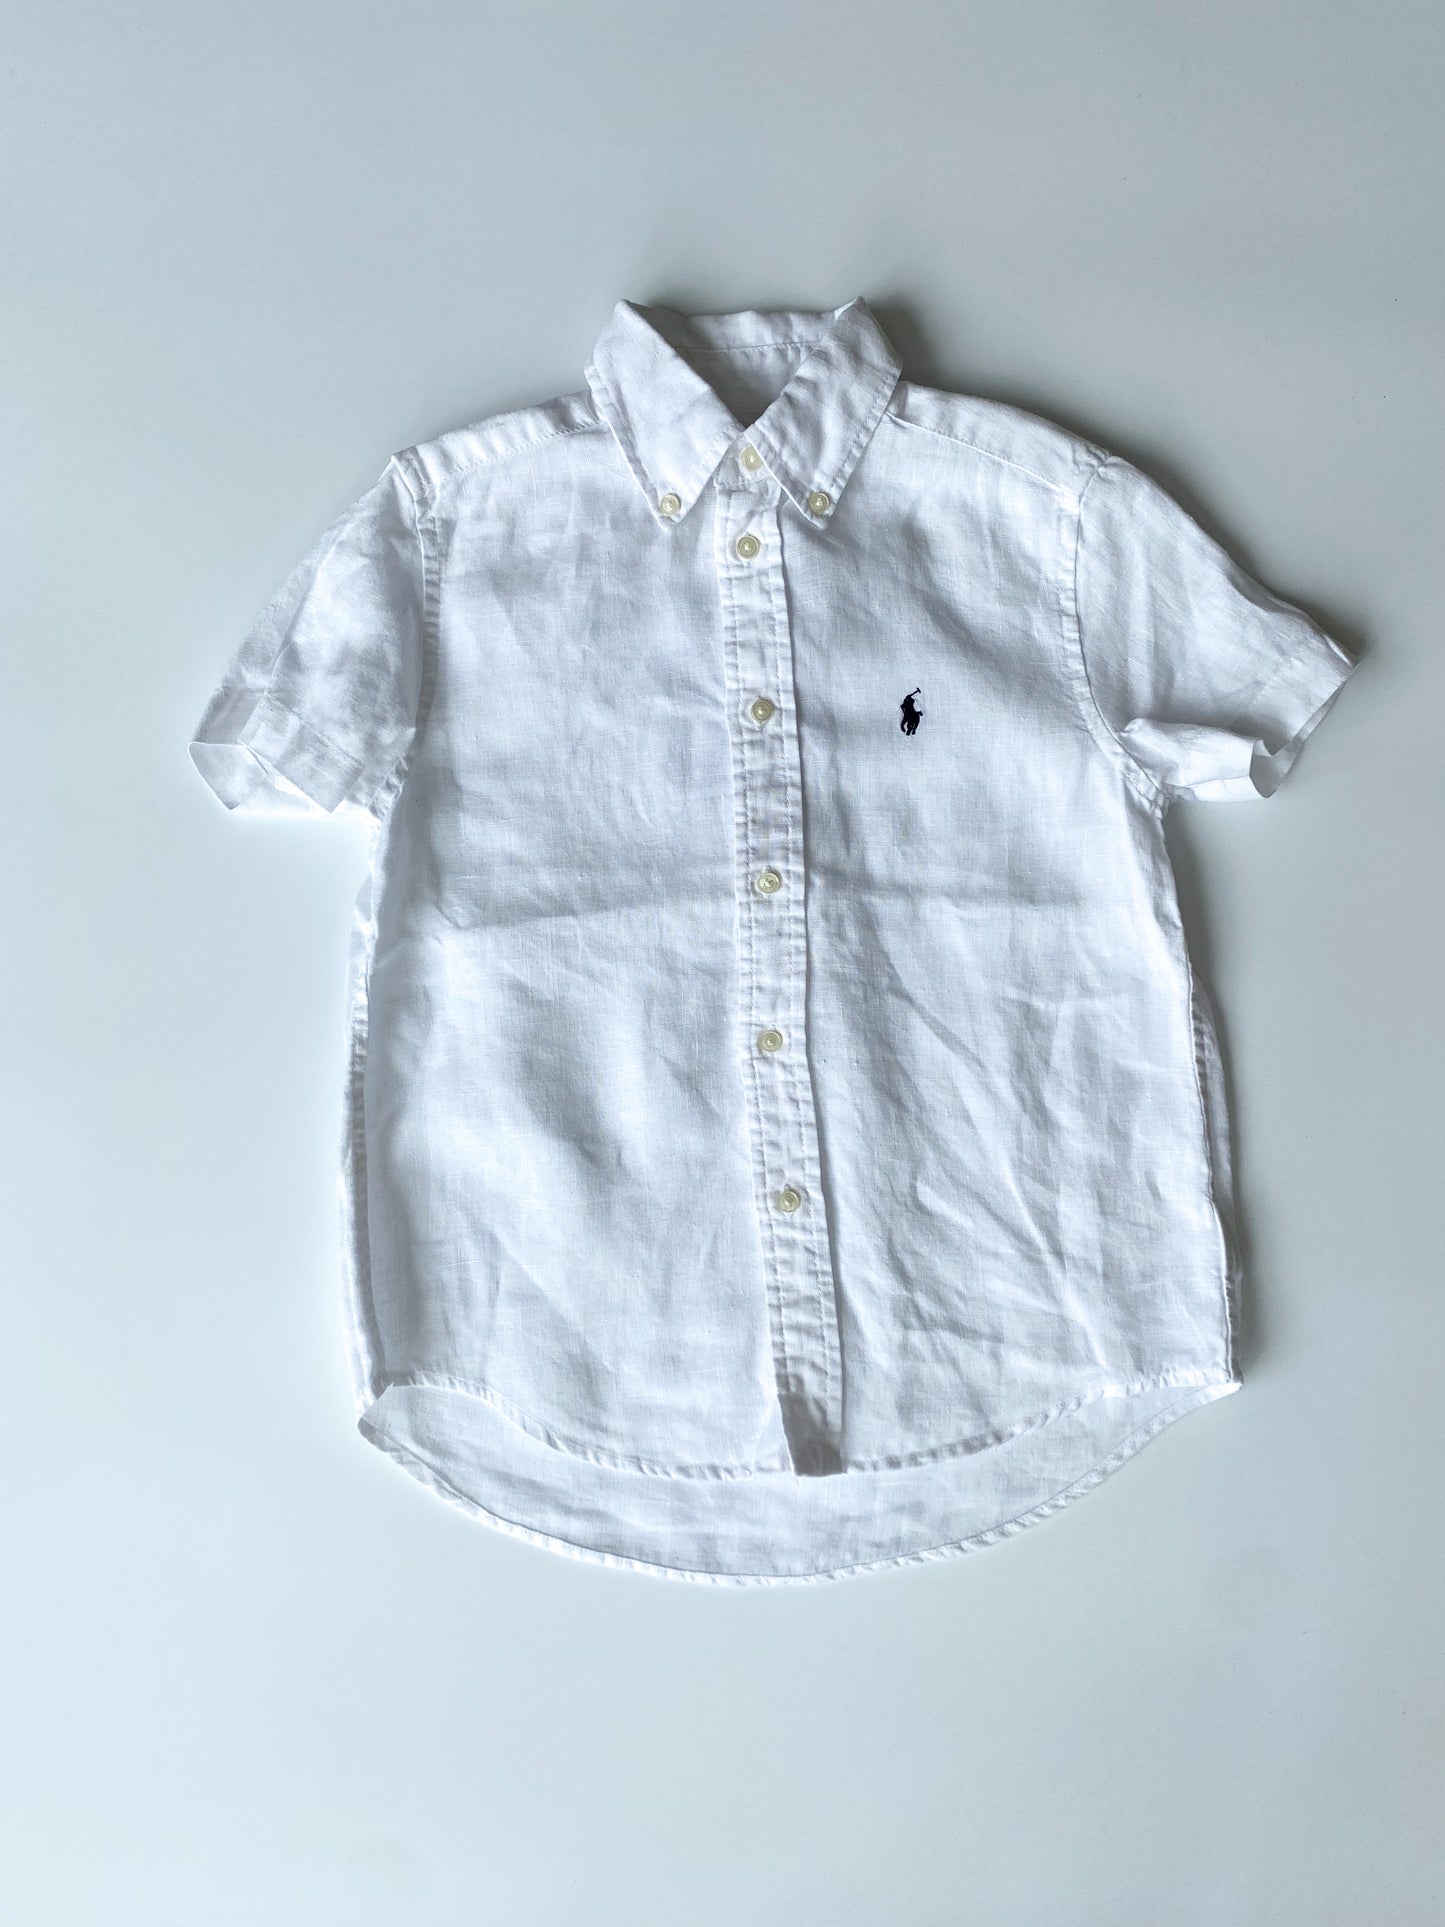 PRE-OWNED Leinen Hemd weiß Polo Ralph Lauren Gr. 6 J